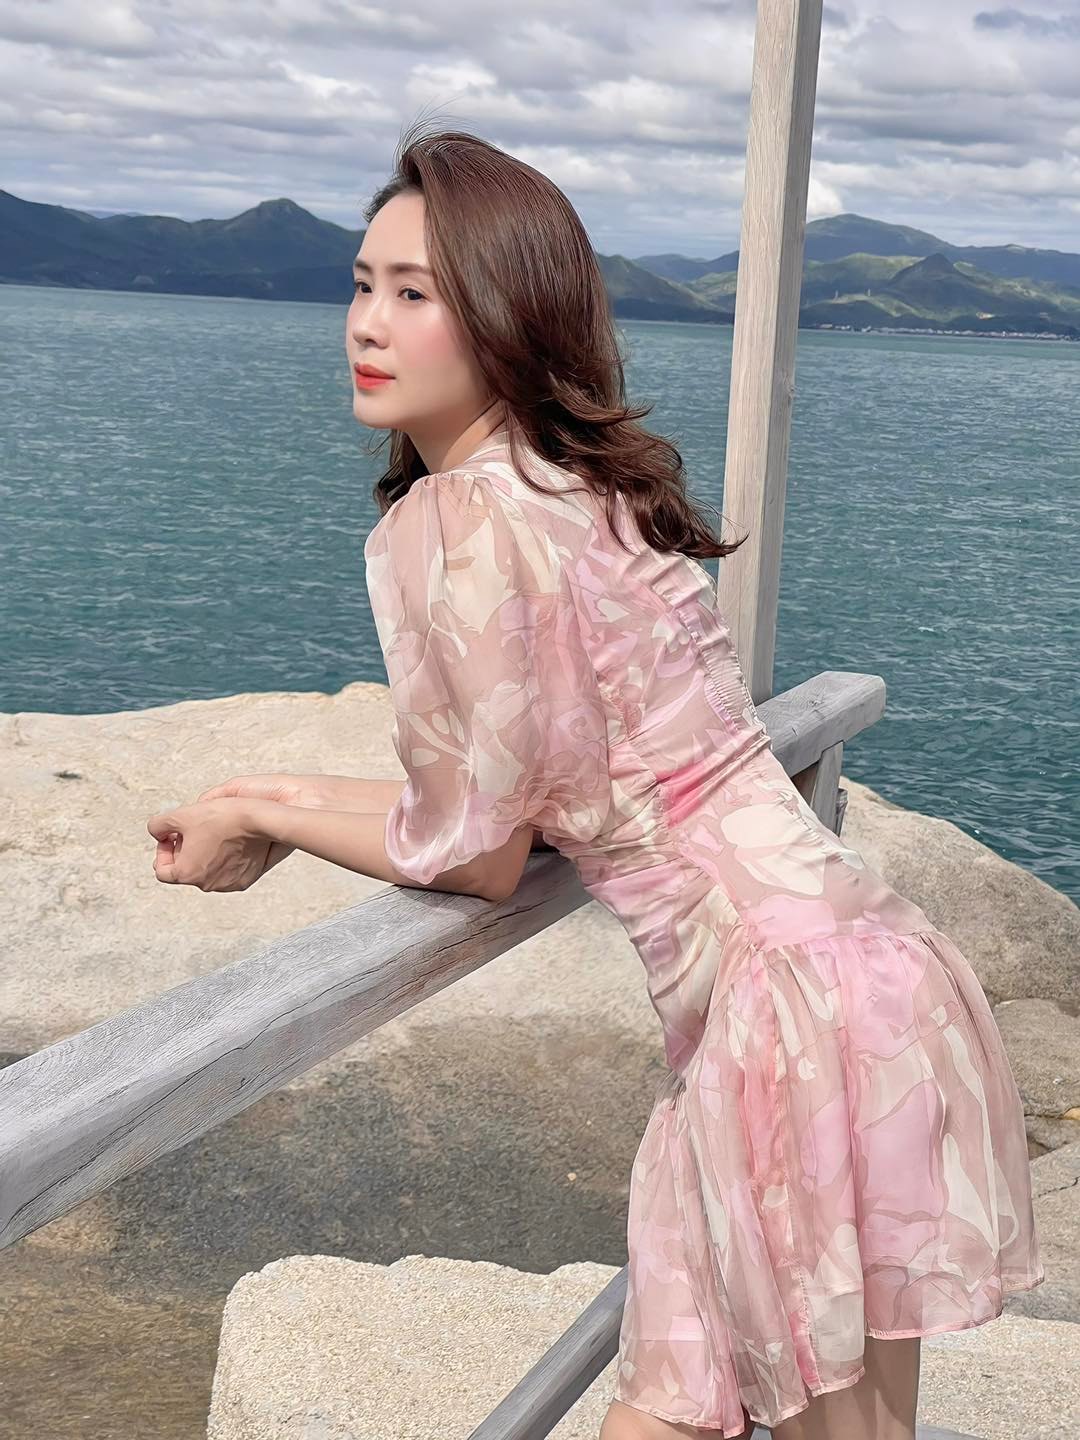 Hồng Diễm diện váy xẻ cao tít tắp, khoe sắc vóc không thua kém hoa hậu - 5